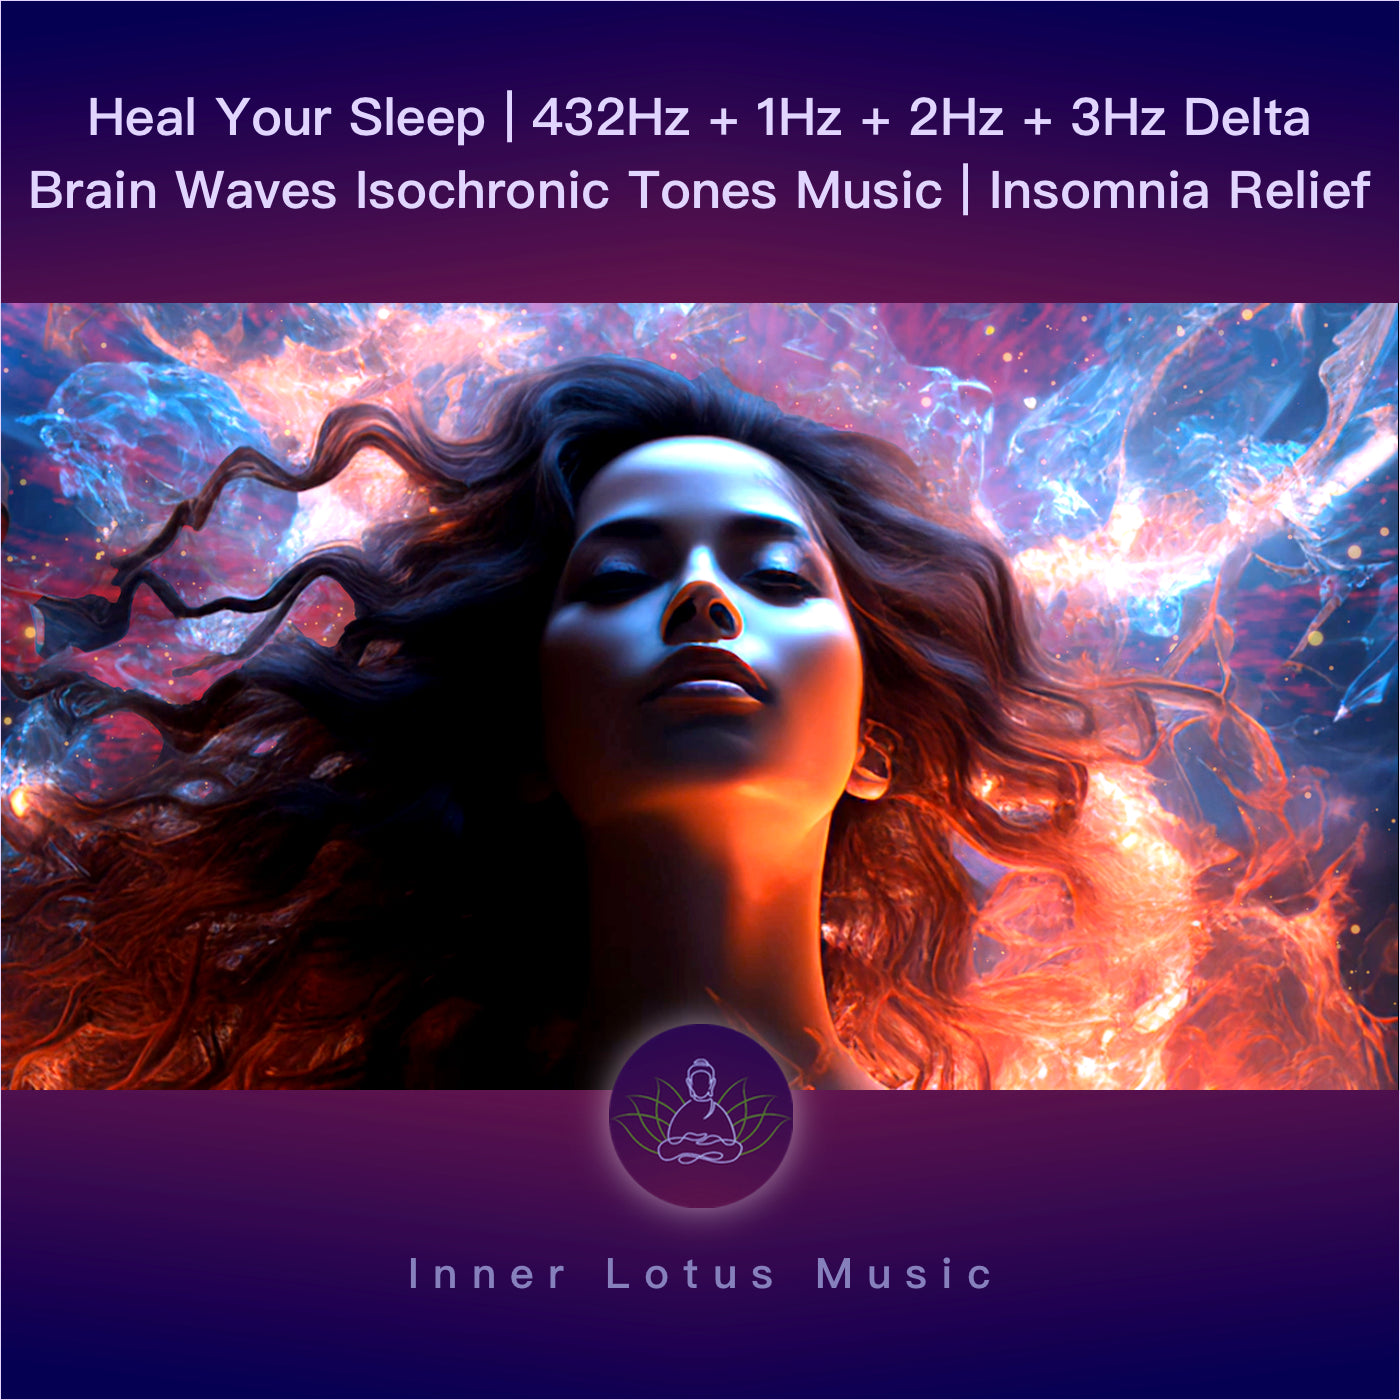 Heal Your Sleep | 432Hz + 1Hz + 2Hz + 3Hz Delta Brain Waves Isochronic Tones Music | Insomnia Relief